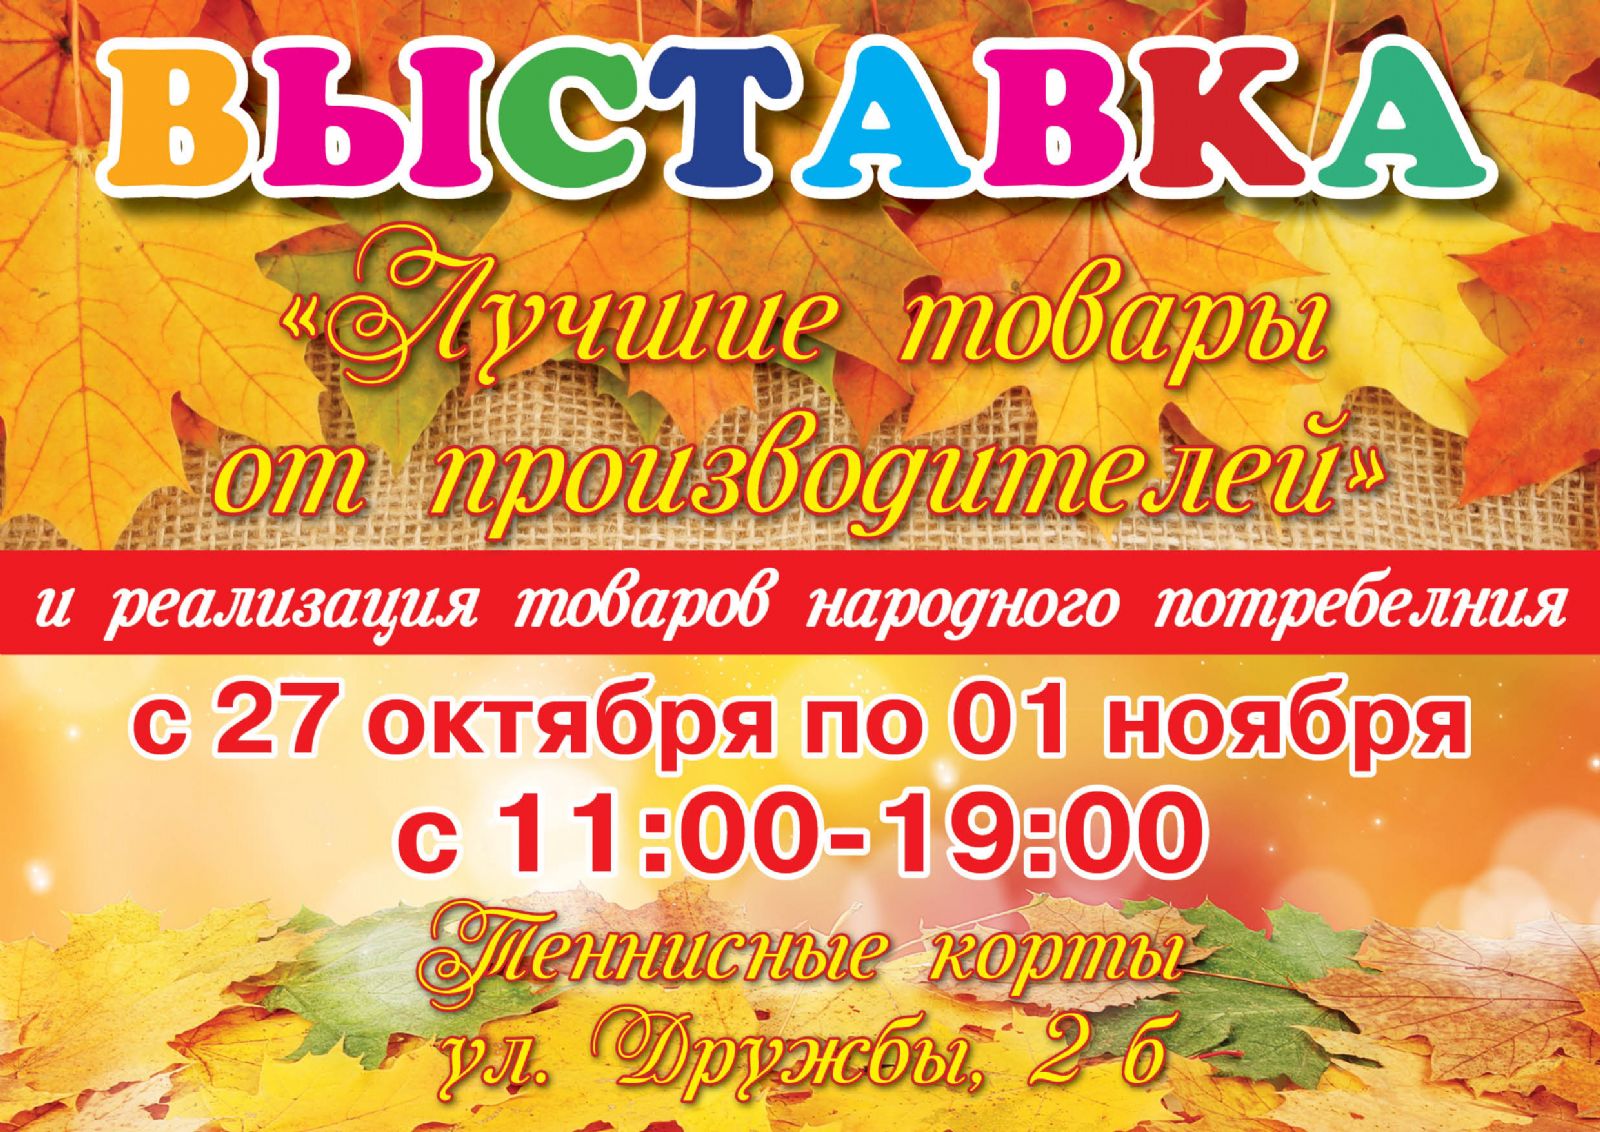 Выставка "Лучшие товары от производителя" откроется на теннисных кортах в Сергиевом Посаде 27 октября